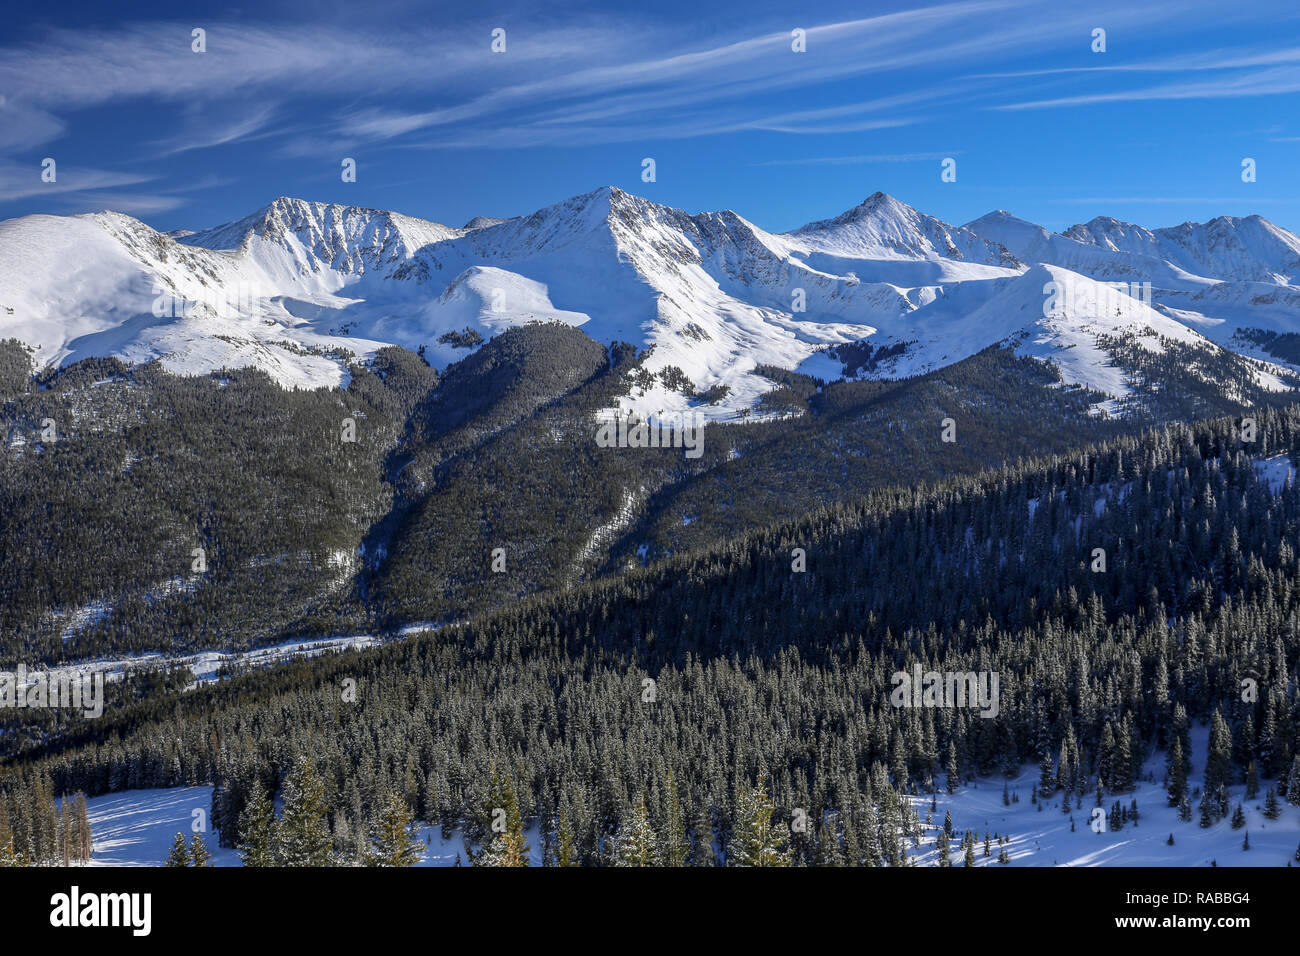 Las Montañas Rocosas de Colorado de Frisco y Silverthorne durante el invierno con nieve y el cielo azul del día Foto de stock